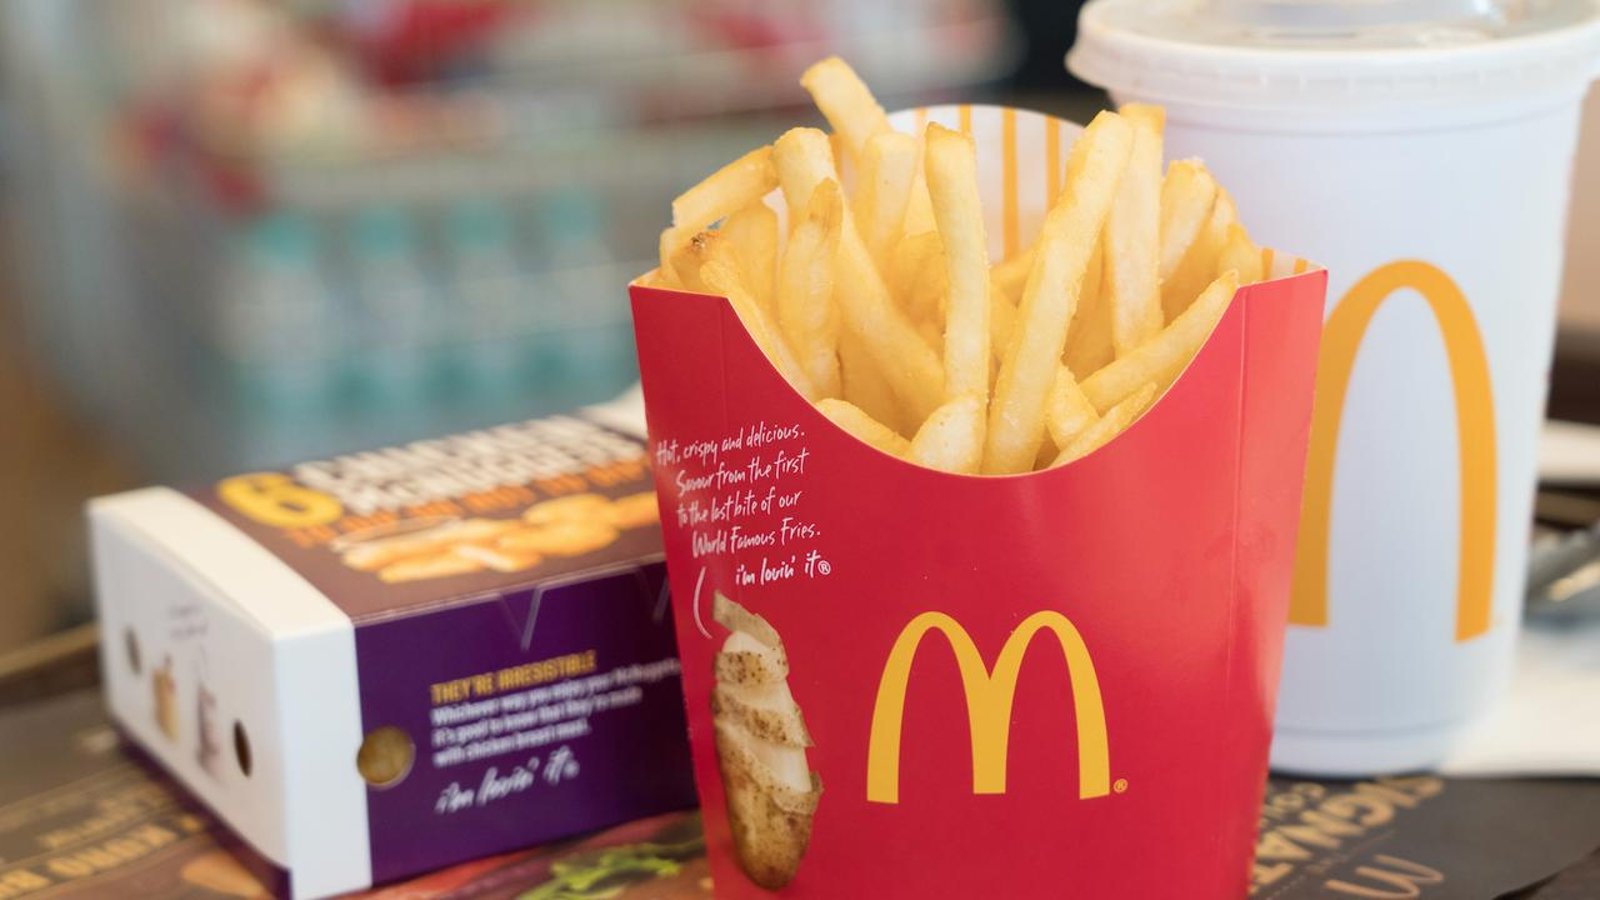 Une immense rumeur circule sur les frites McDonald's en ce moment